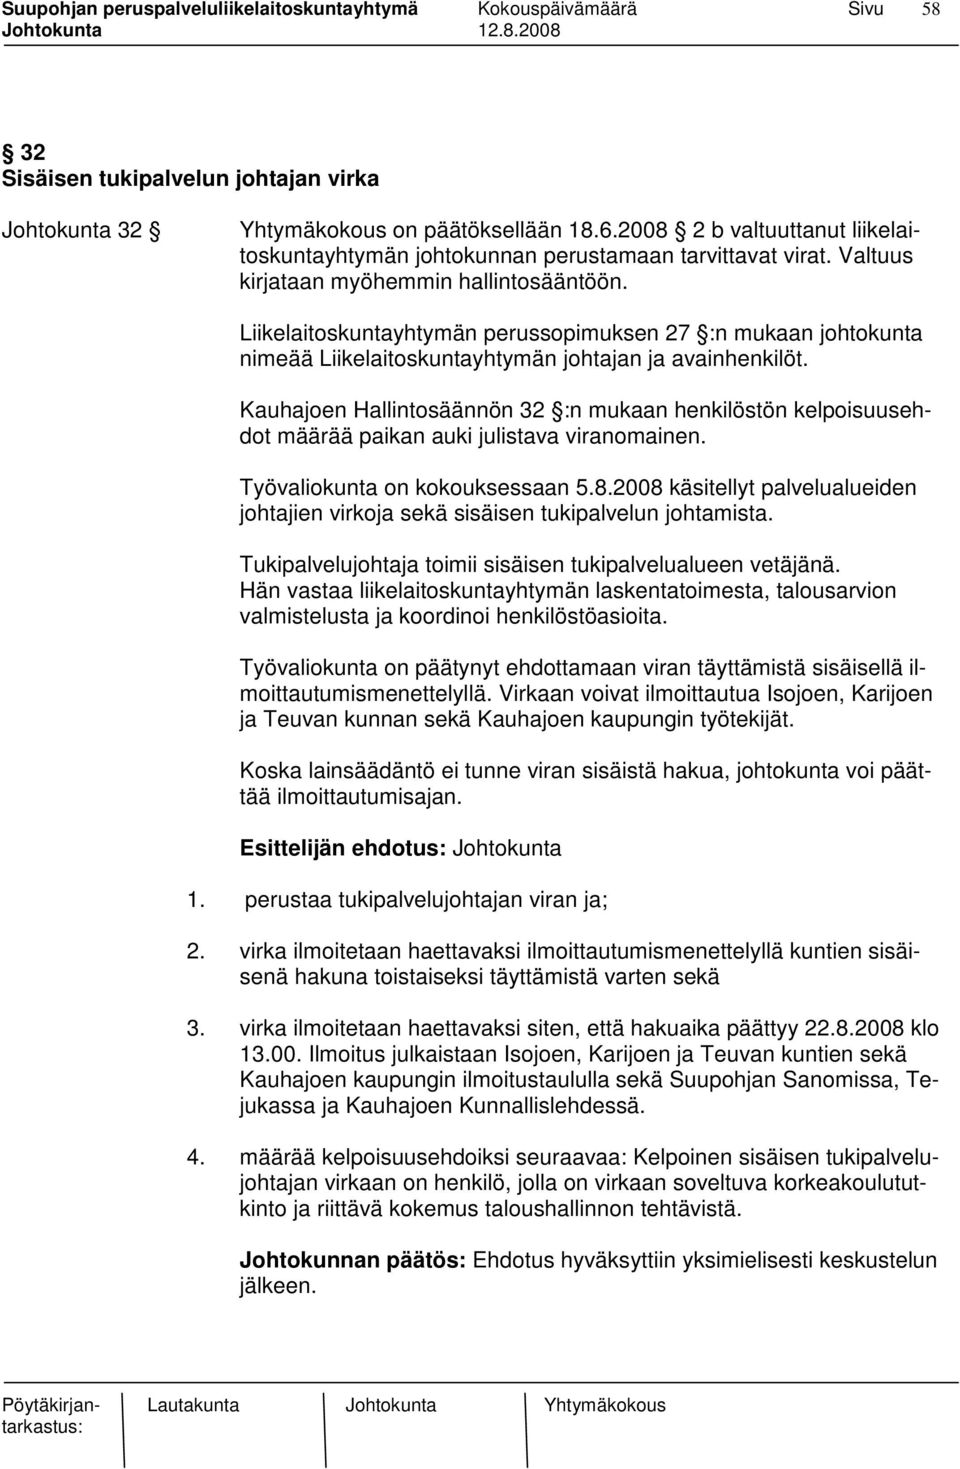 Kauhajoen Hallintosäännön 32 :n mukaan henkilöstön kelpoisuusehdot määrää paikan auki julistava viranomainen. Työvaliokunta on kokouksessaan 5.8.